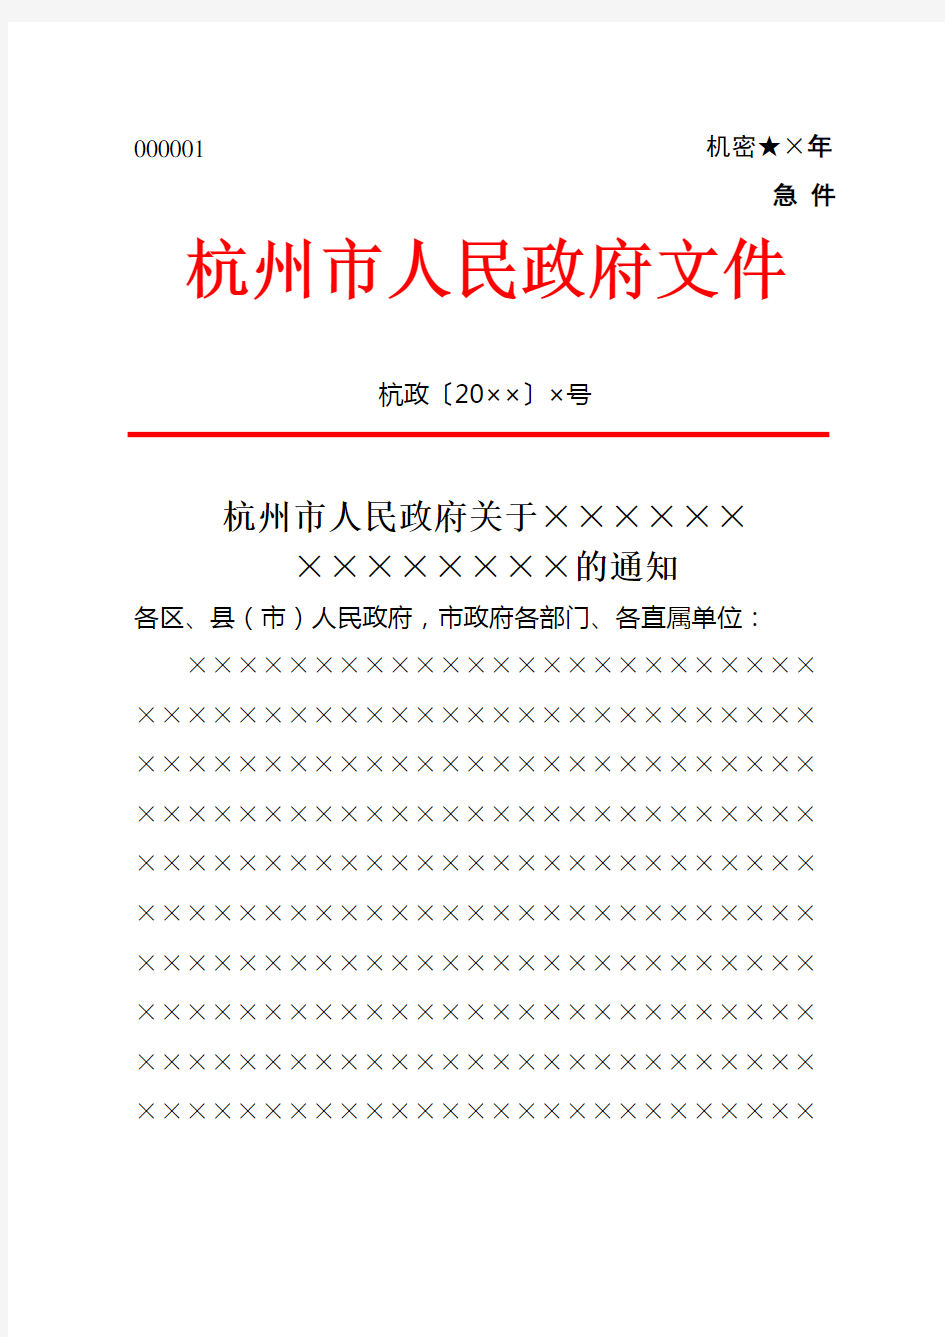 杭州市人民政府红头文件下行文通知模板范例